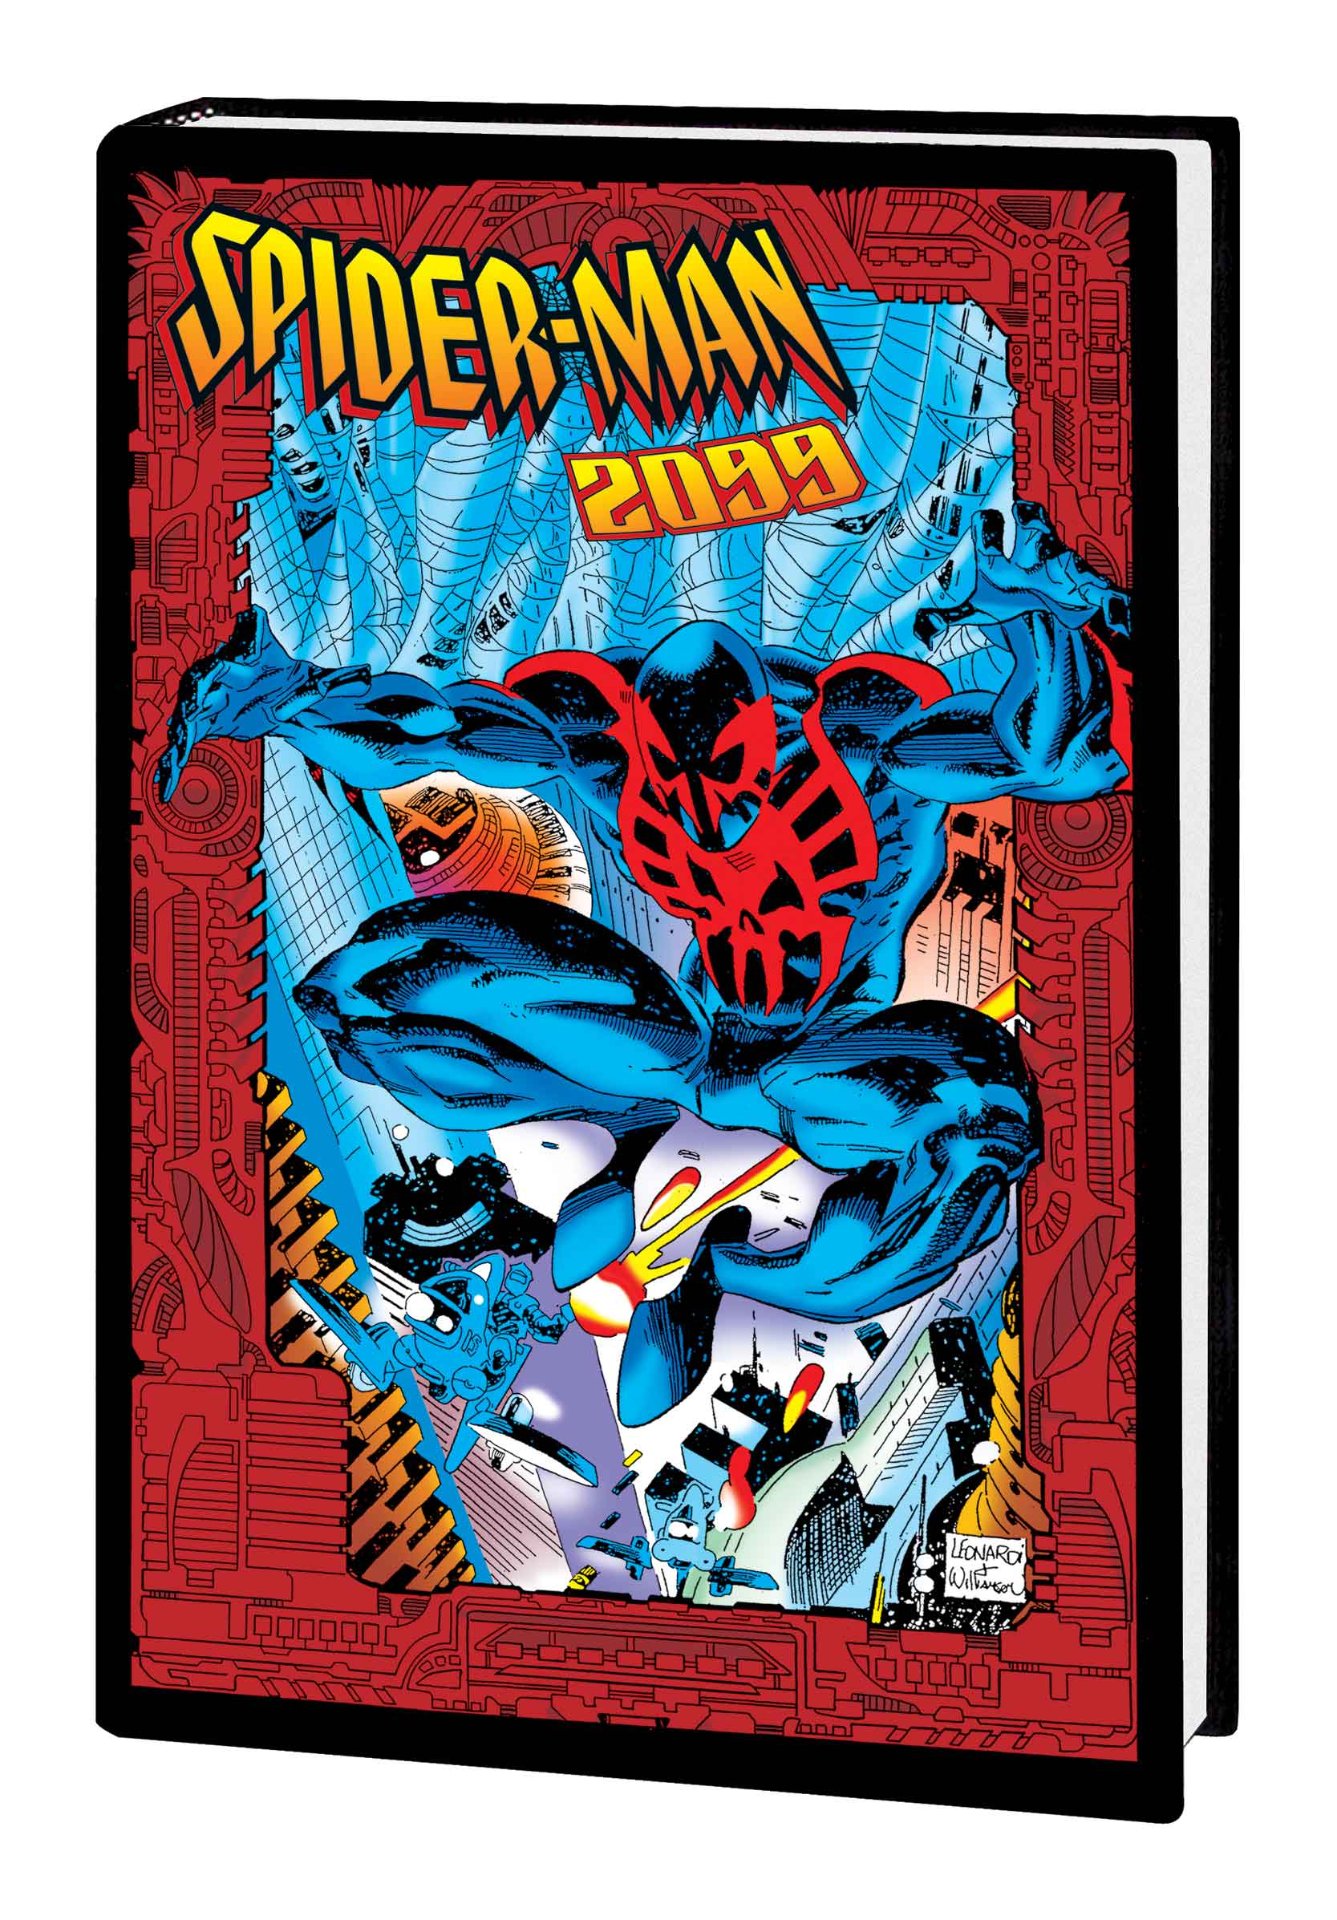 Marvel Comics June 2022 solicitations